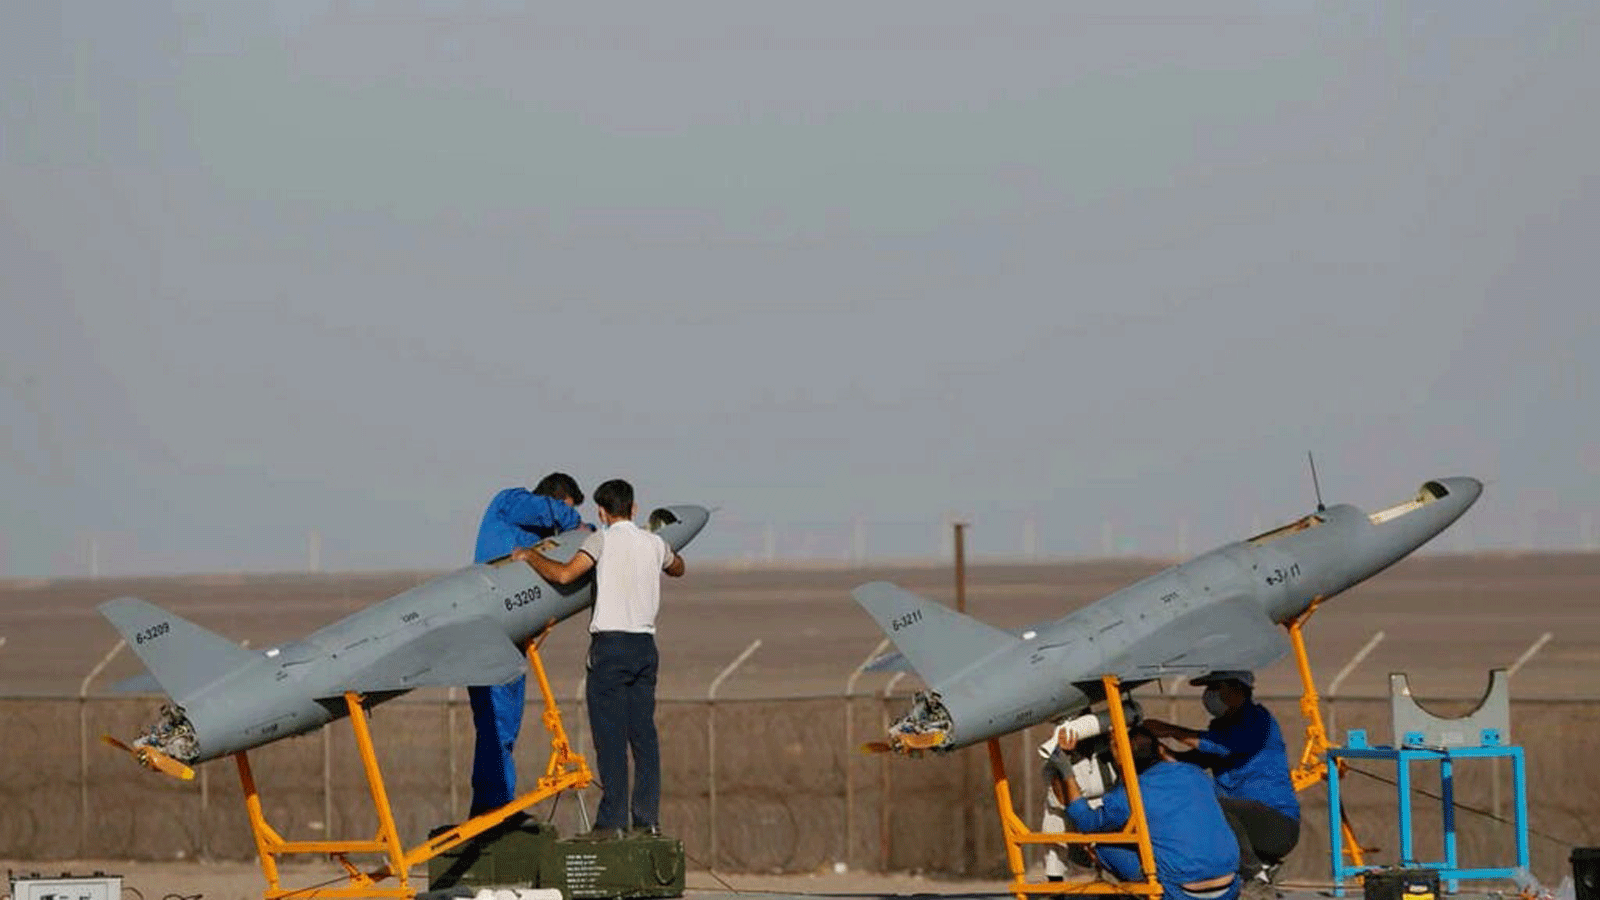 صورة عسكرية إيرانية تظهر طائرات بدون طيار خلال تدريب في مكان مجهول داخل إيران.